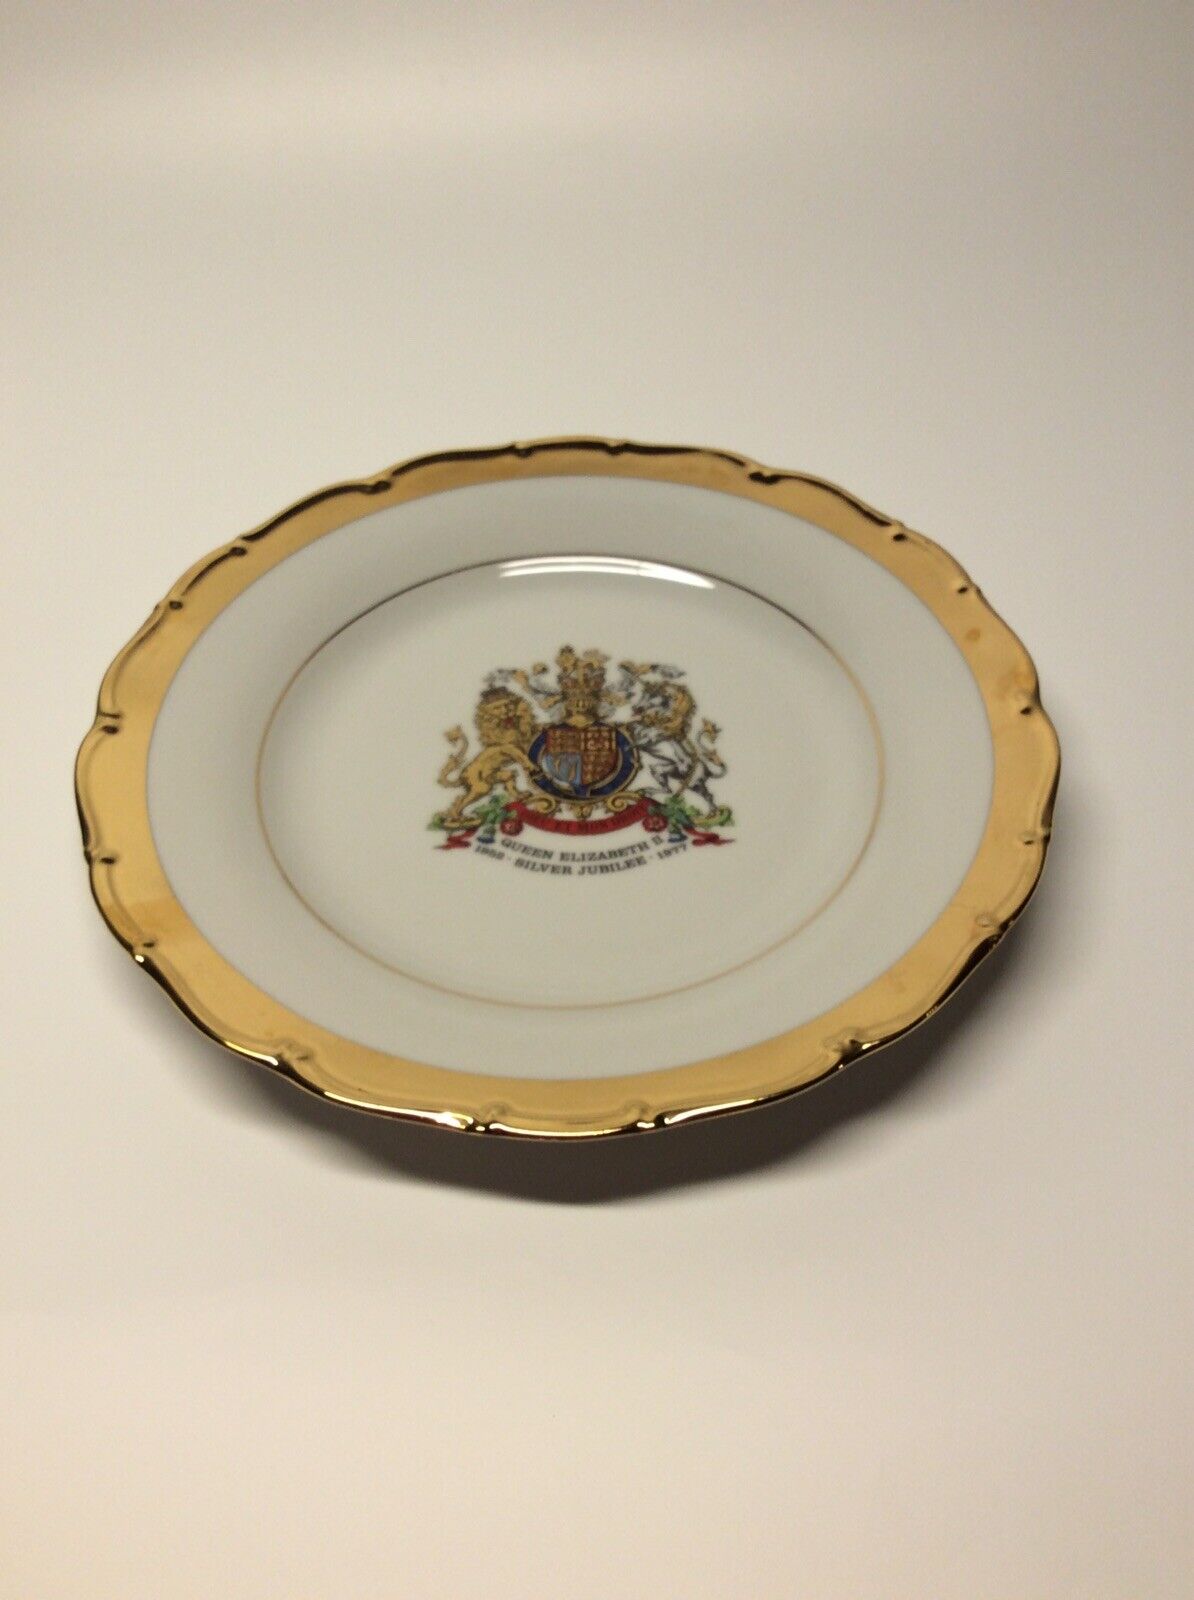 1792 Haas Czjzek Queen Elizabeth II Silver Jubilee Plate 1953 - 1977 Heavy Gold